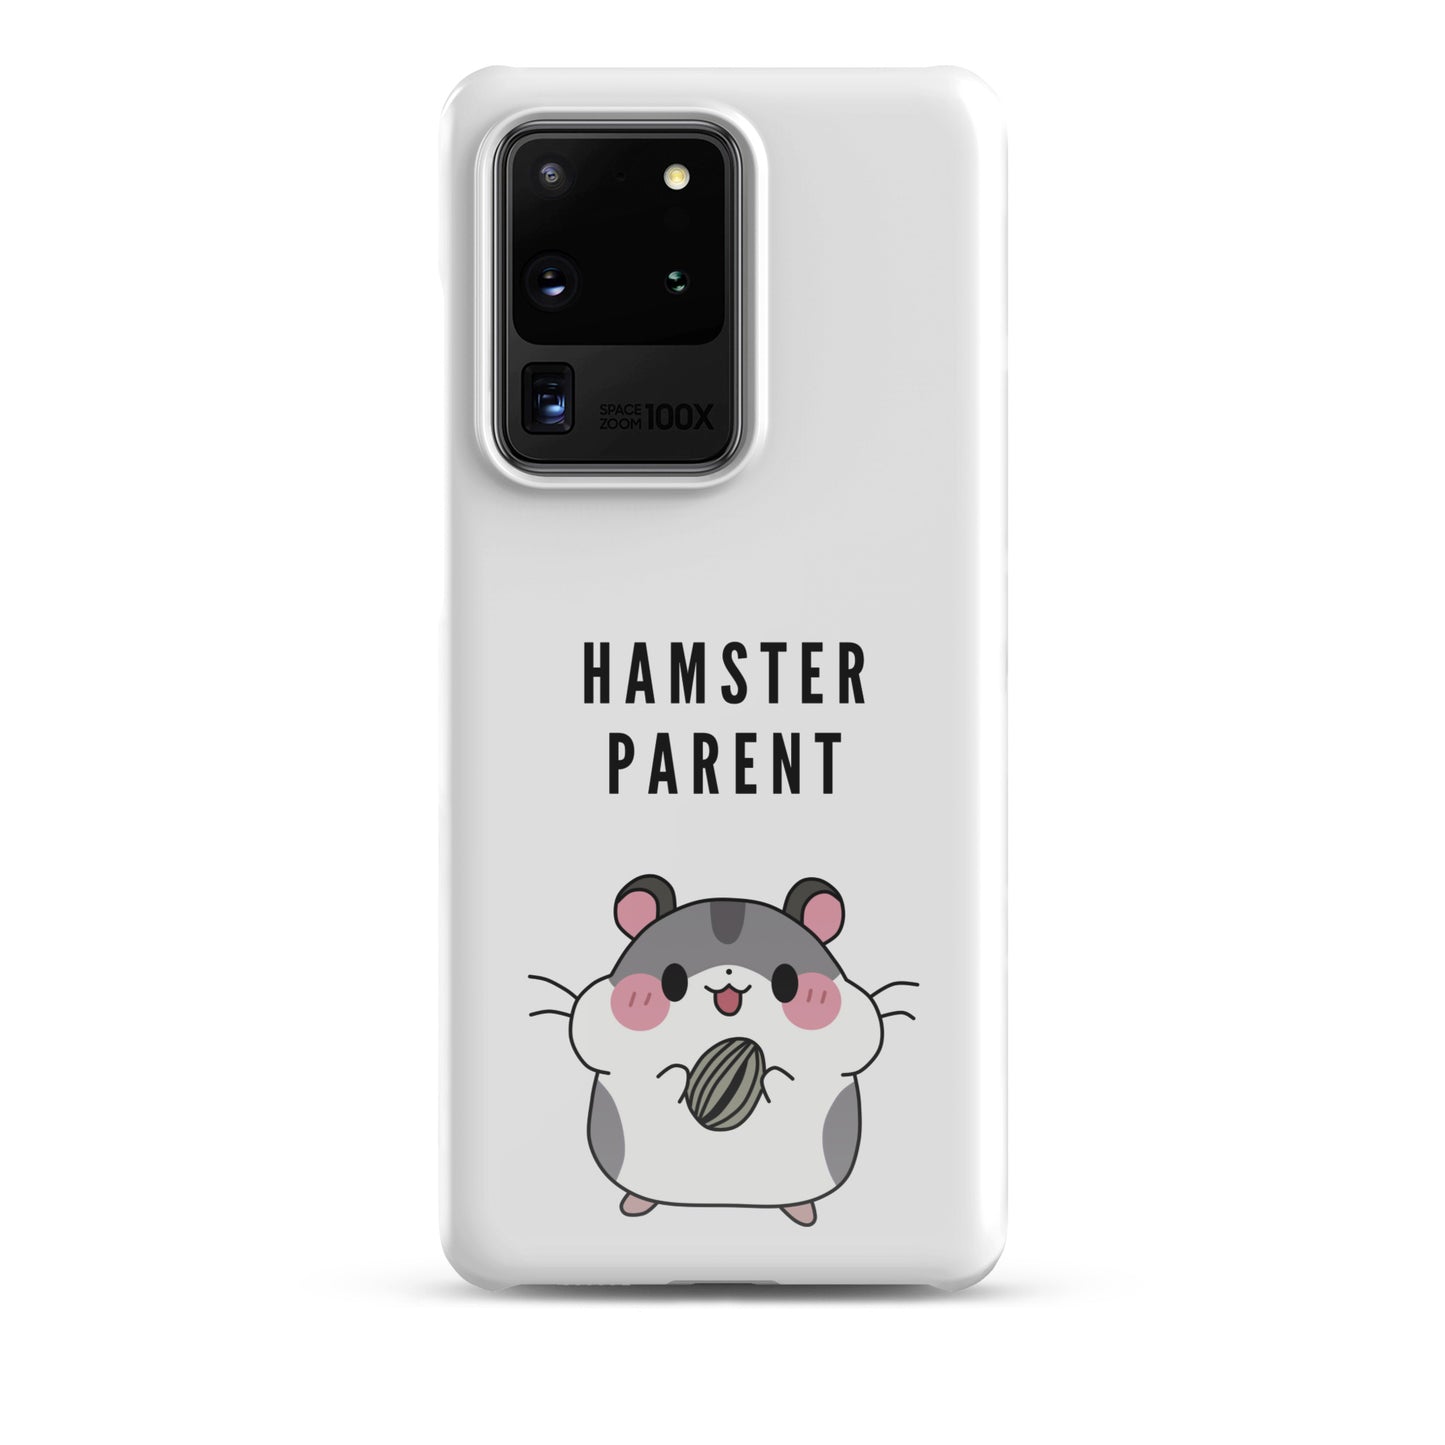 Hamster Parent case for Samsung®